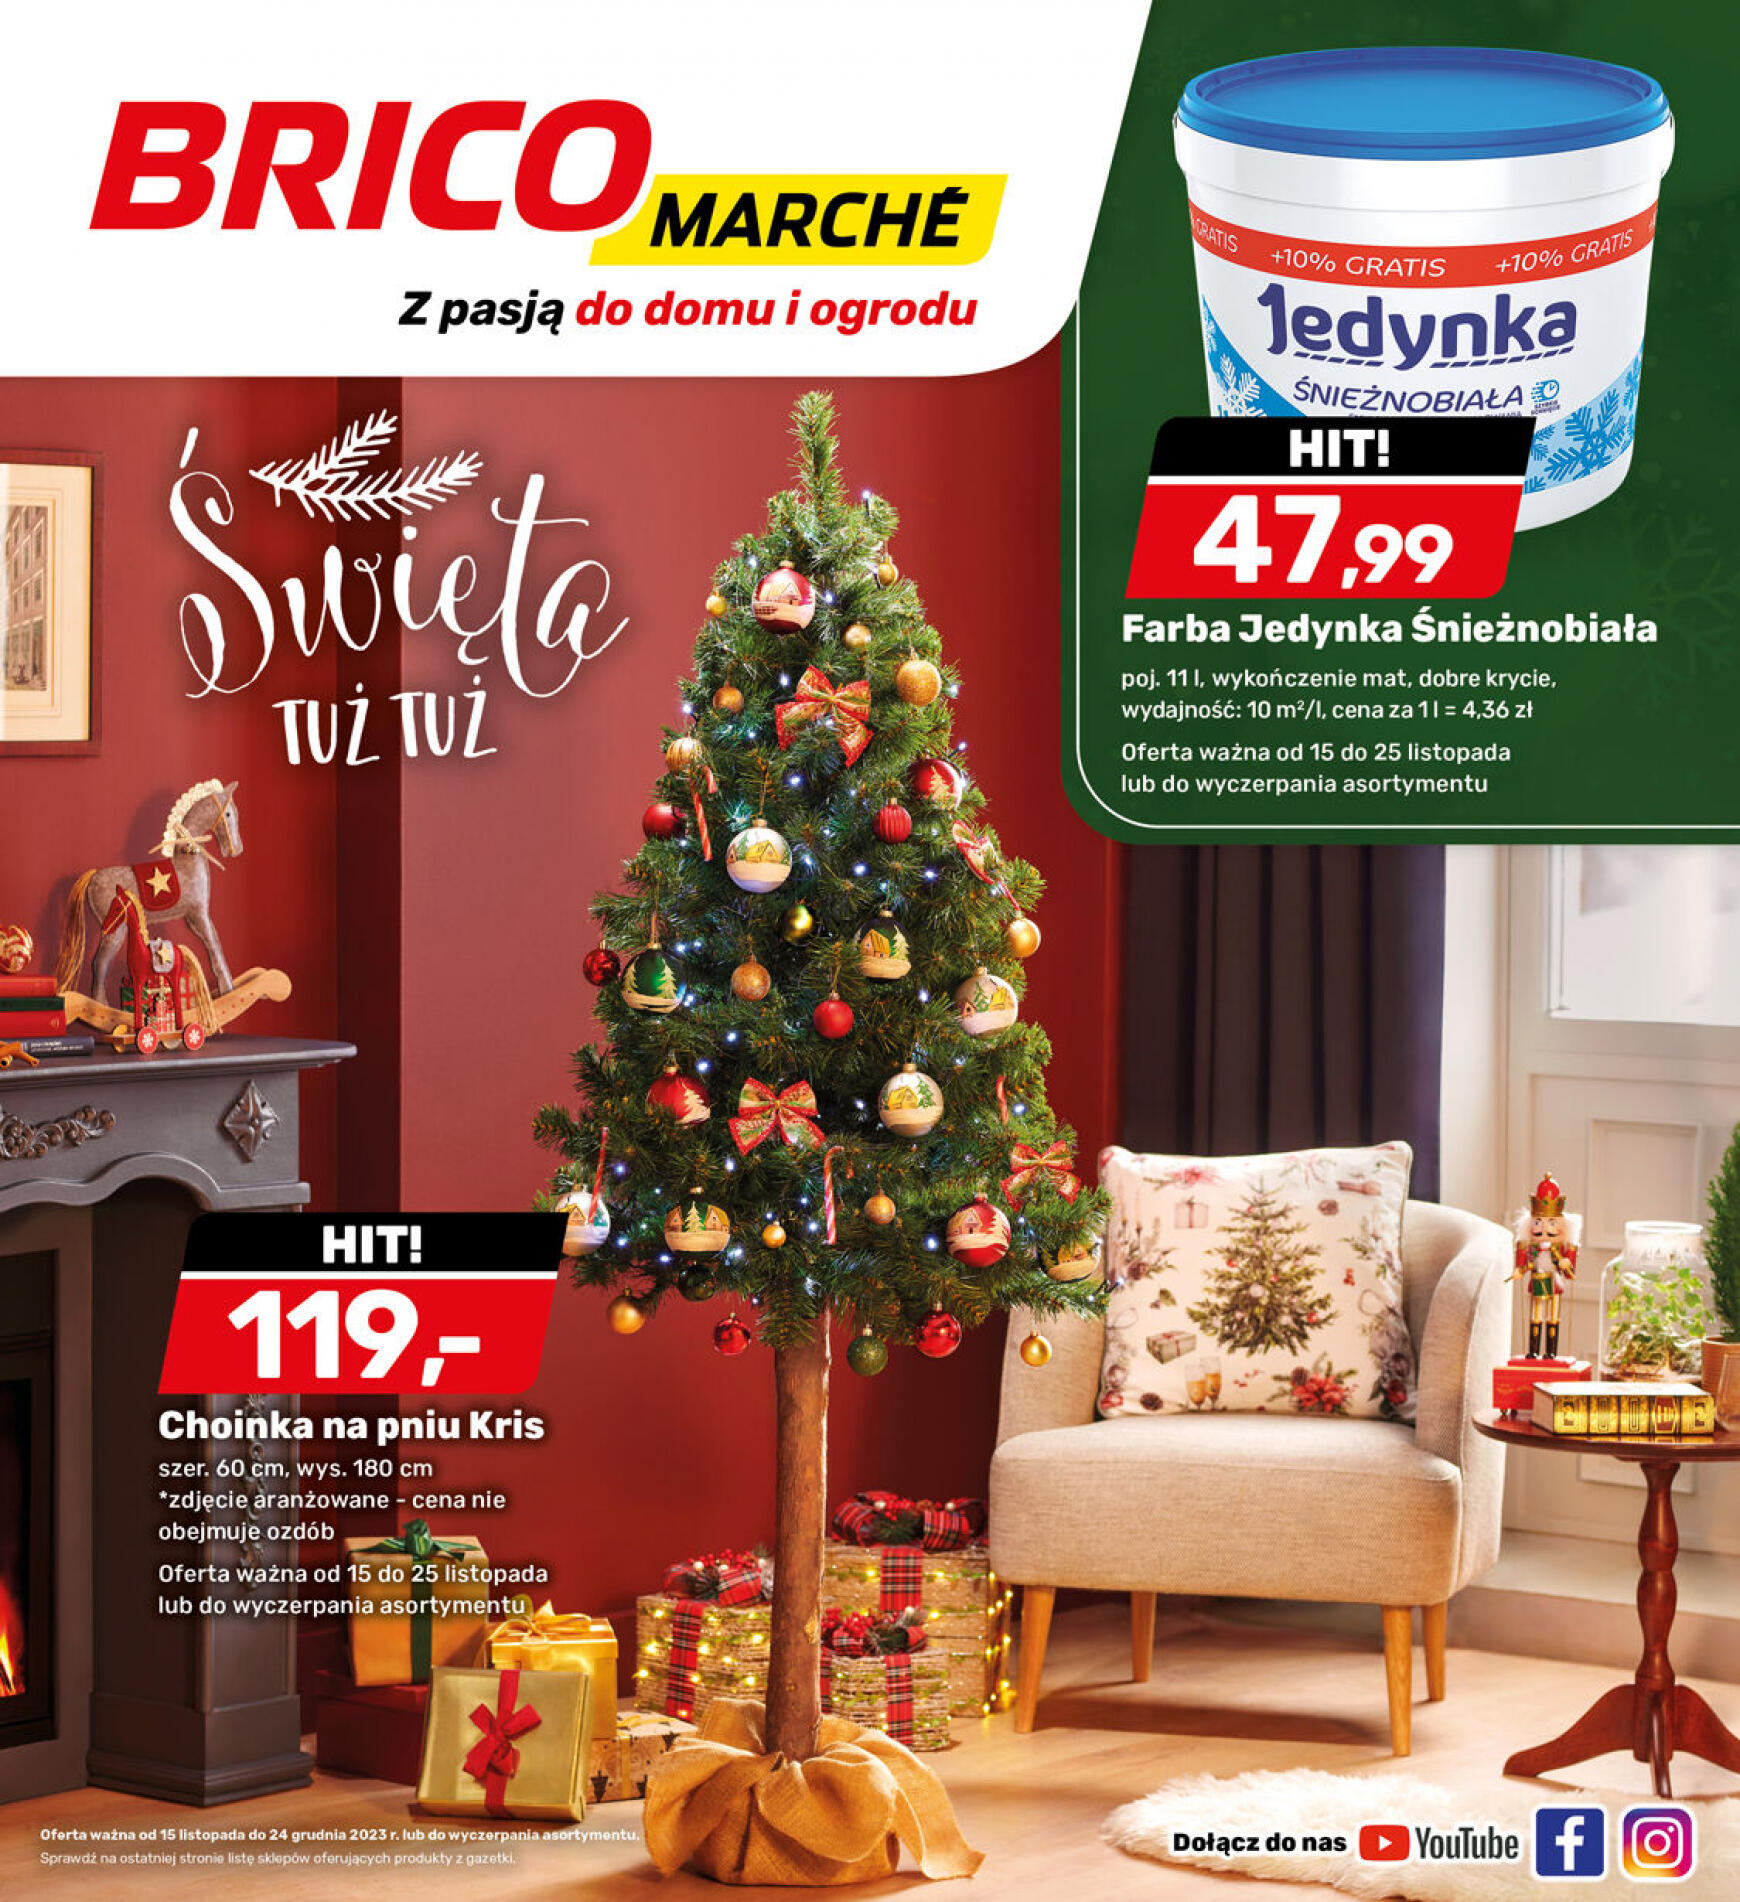 brico-marche - - Bricomarche - page: 20